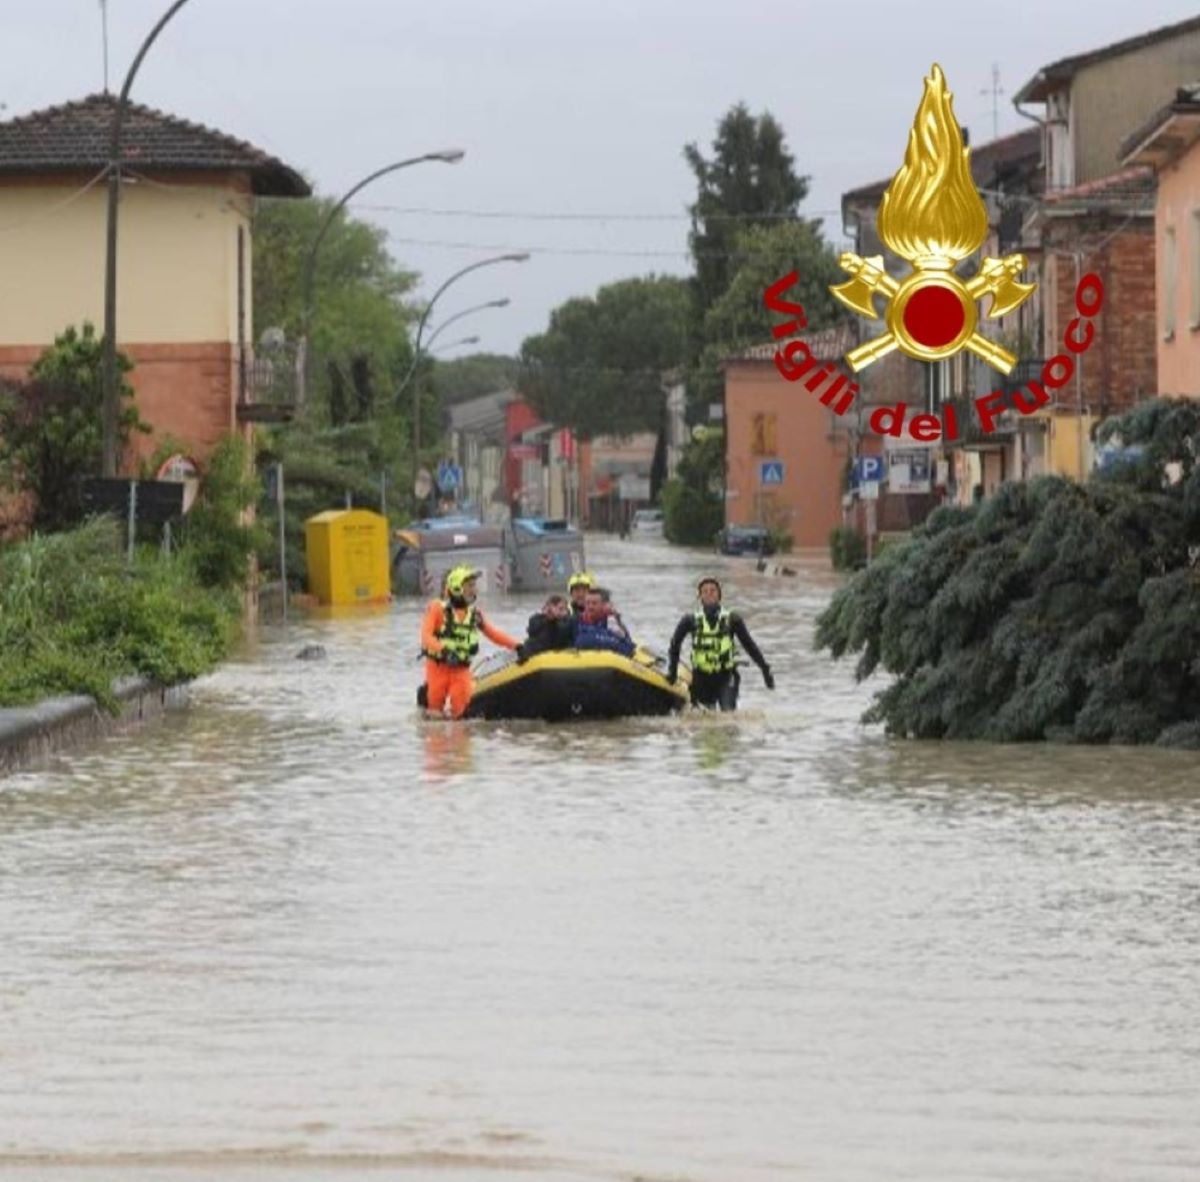 Cricca a Cesena per ripulire le strade dopo l'alluvione in Emilia Romagna